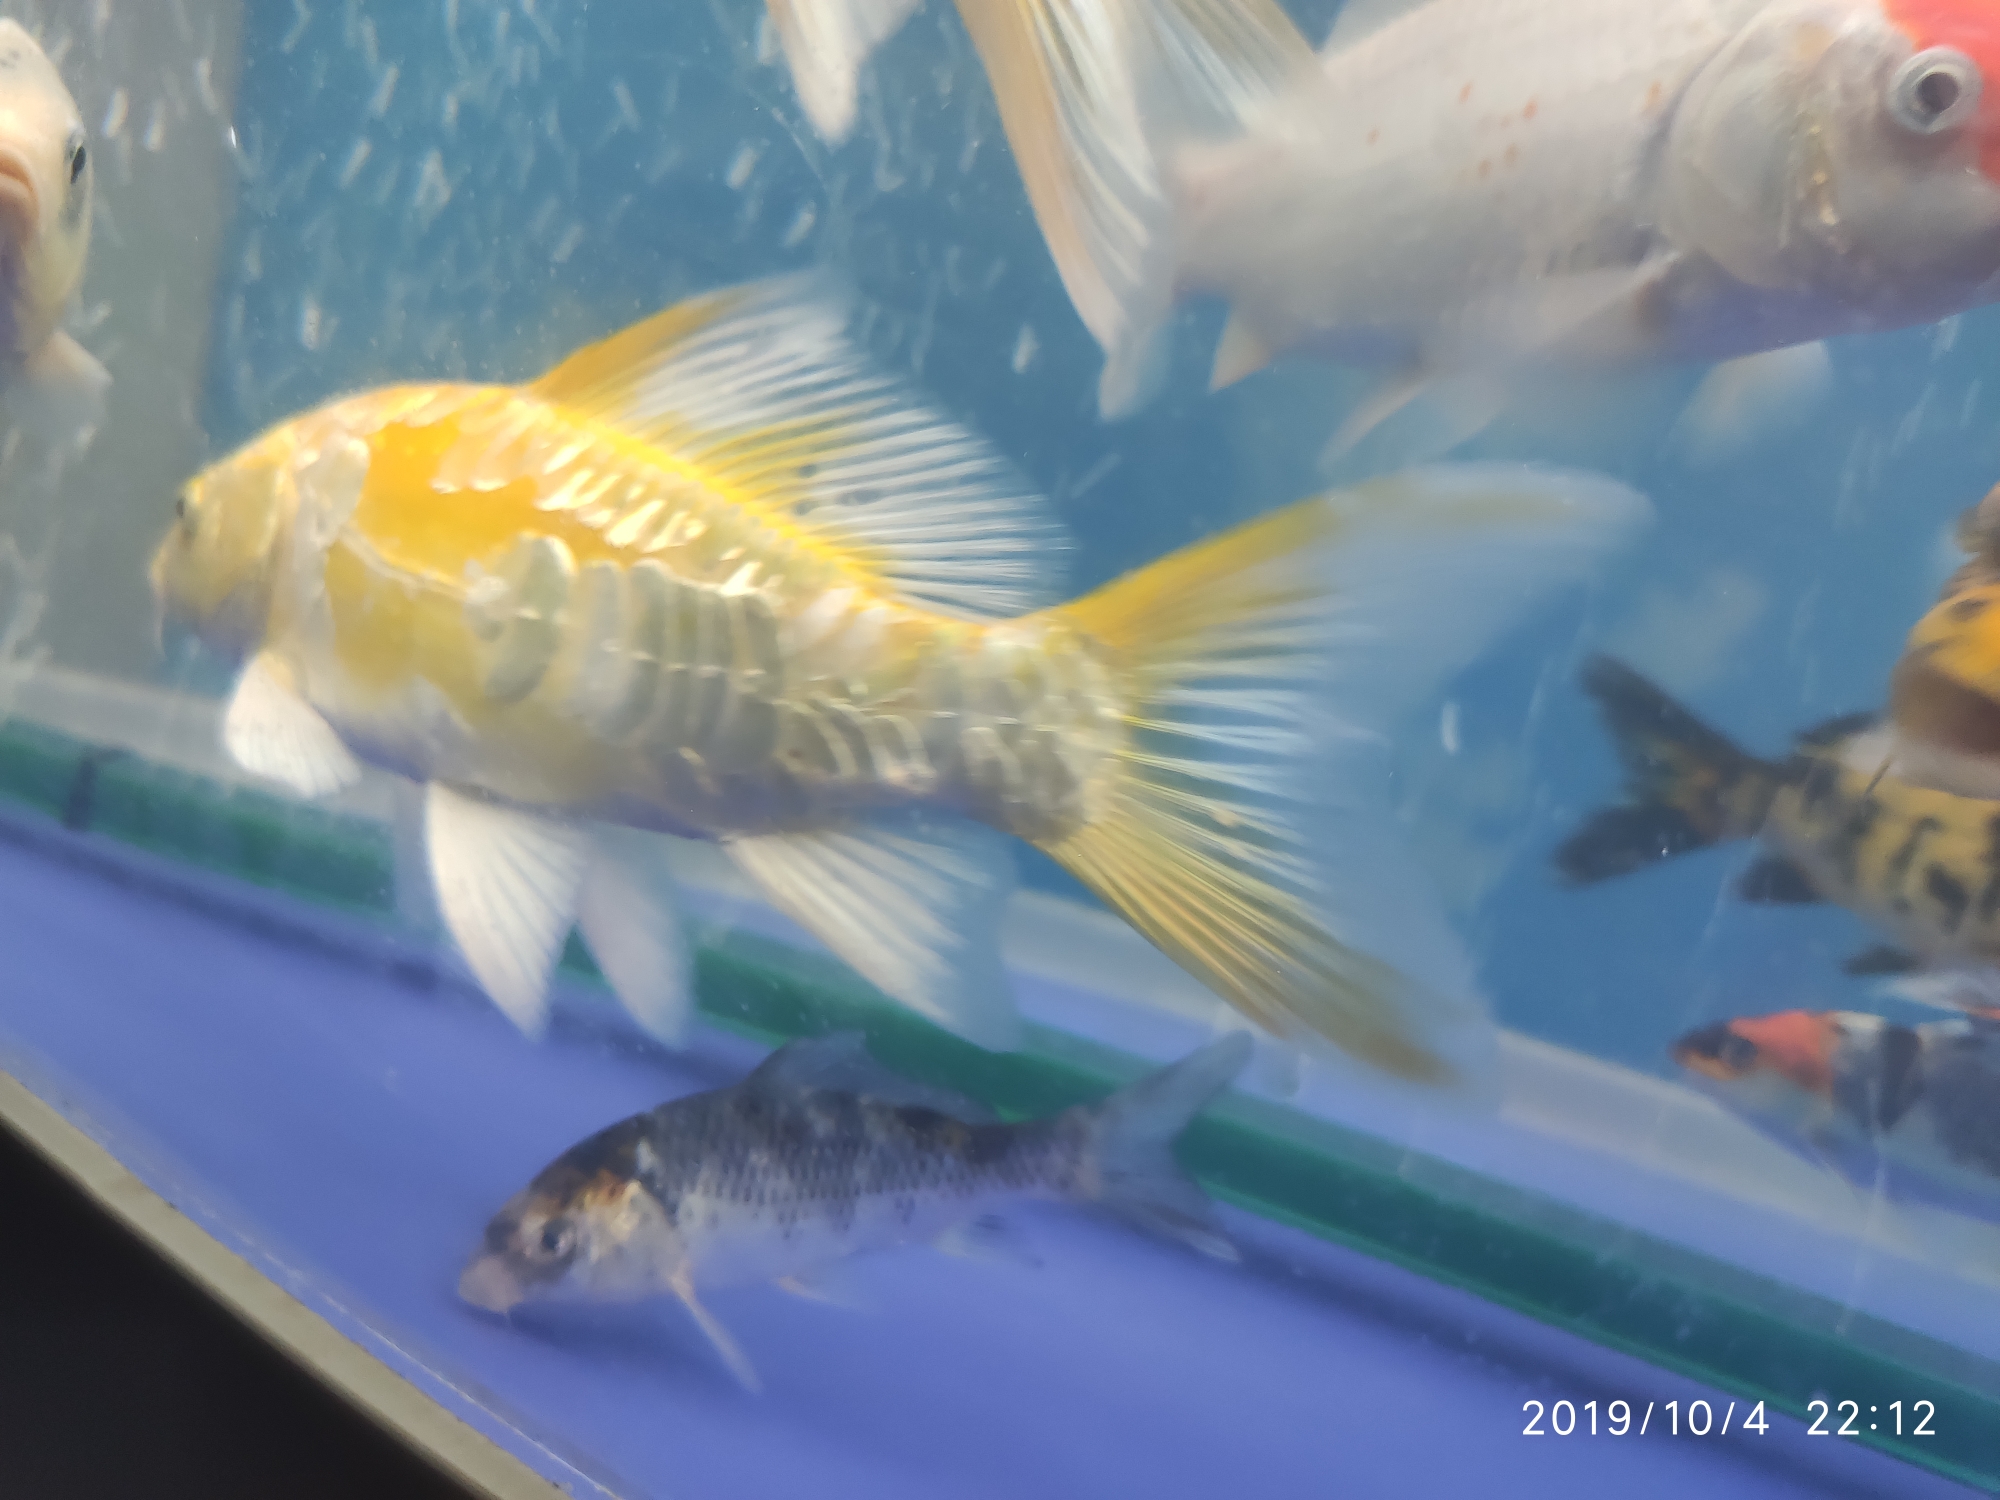 Ashkenazi yellow body caudal fin with a small hole bubble Pikonni fish ASIAN AROWANA,AROWANA,STINGRAY The5sheet